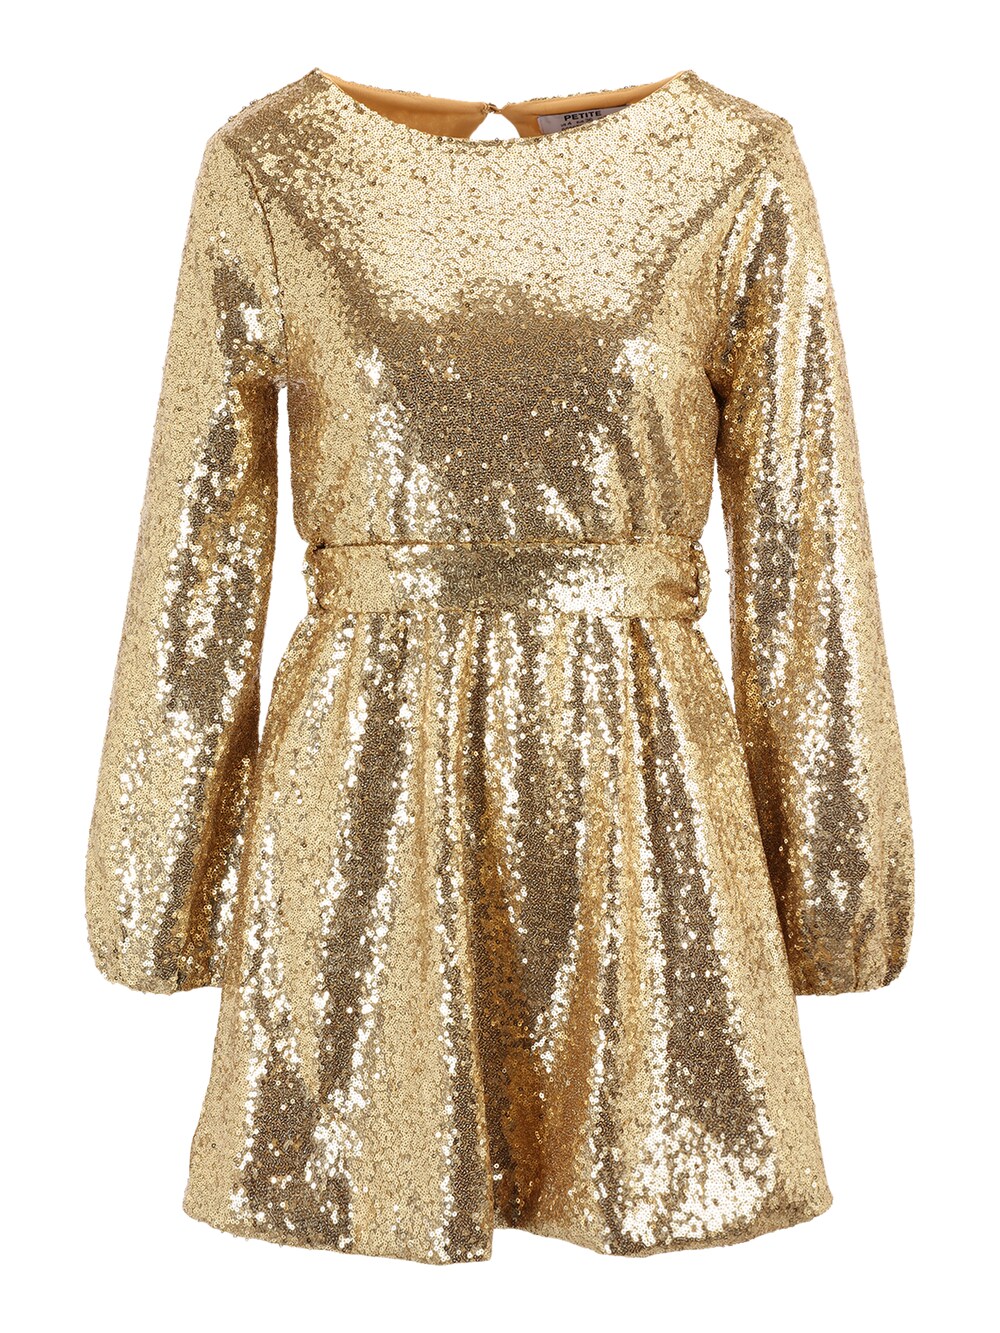 Платье Dorothy Perkins, золото платье dorothy perkins базовое 42 размер